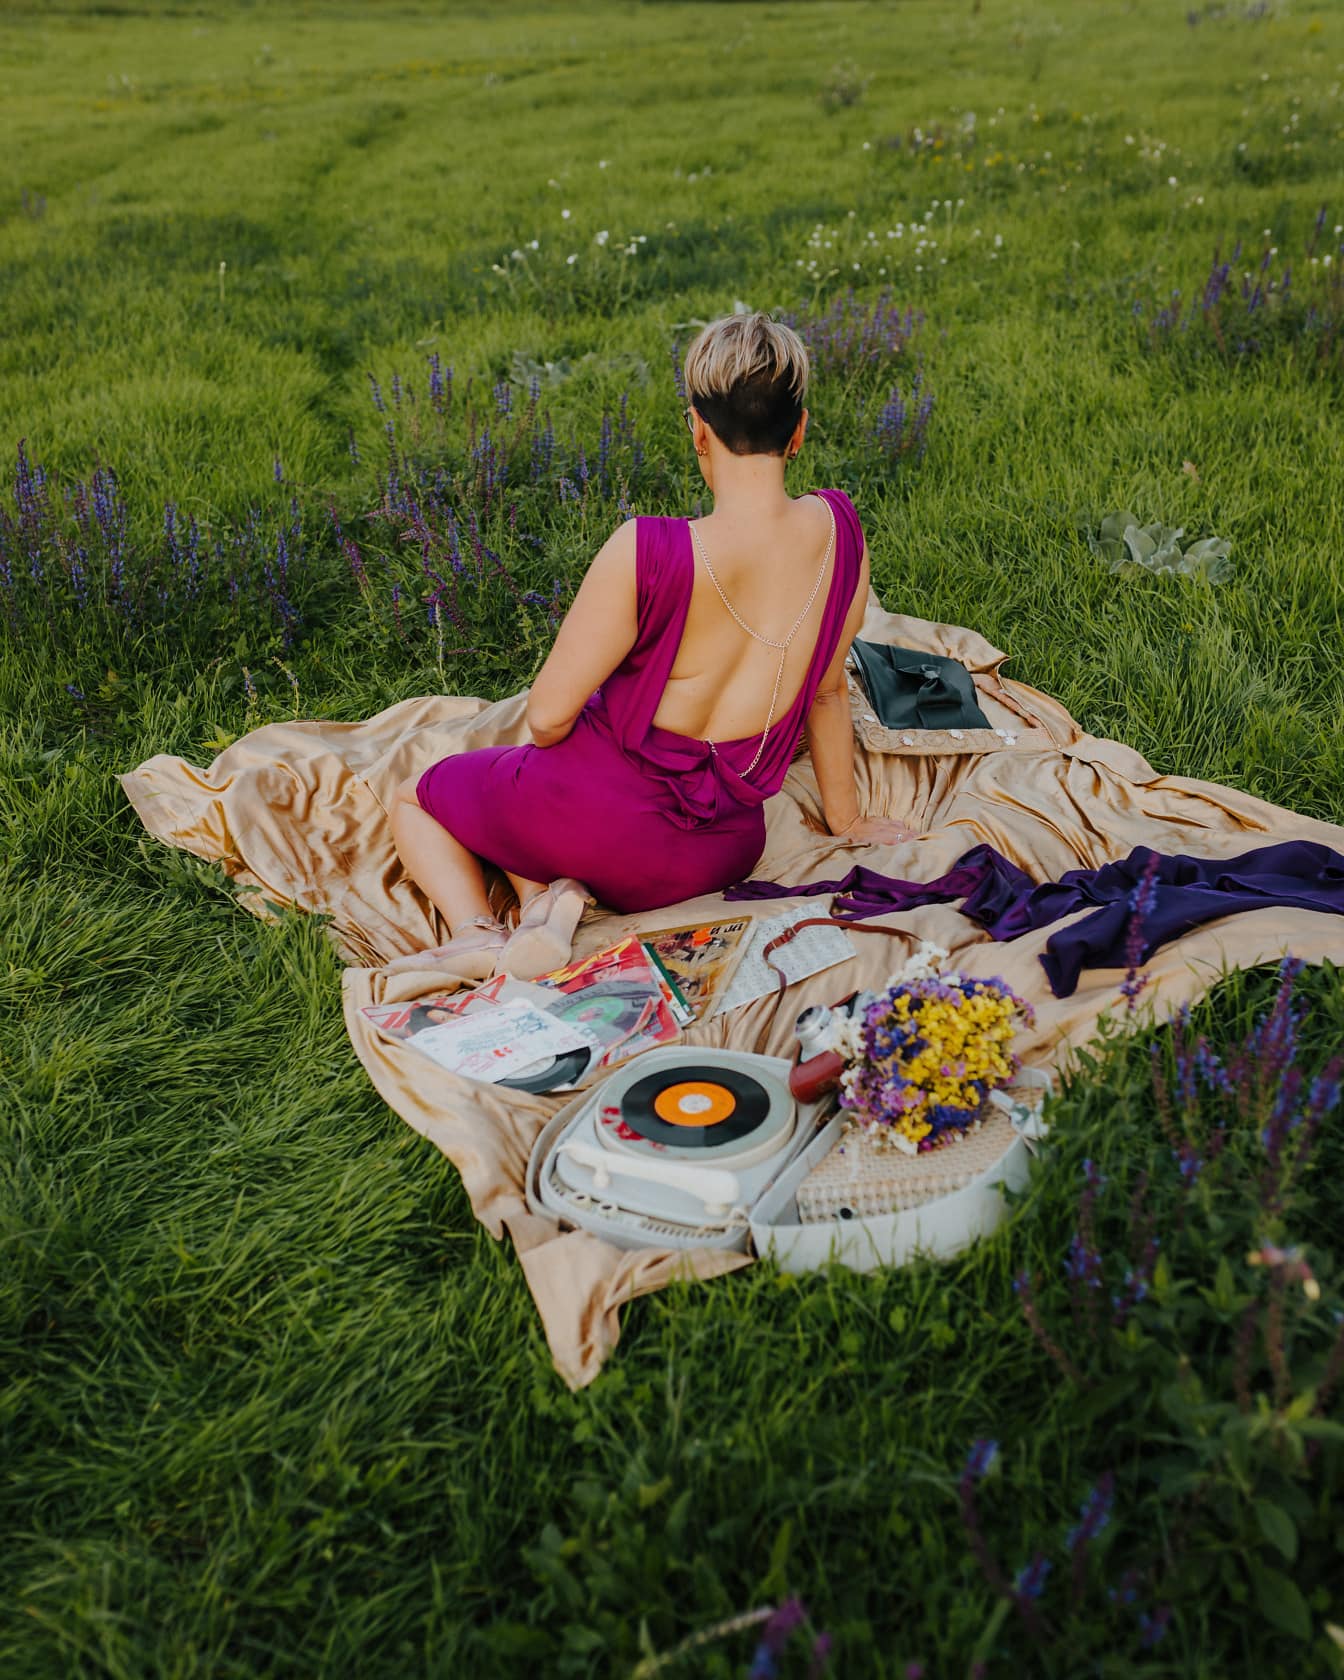 Wanita cantik berpose dalam gaun ungu elegan di atas selimut piknik